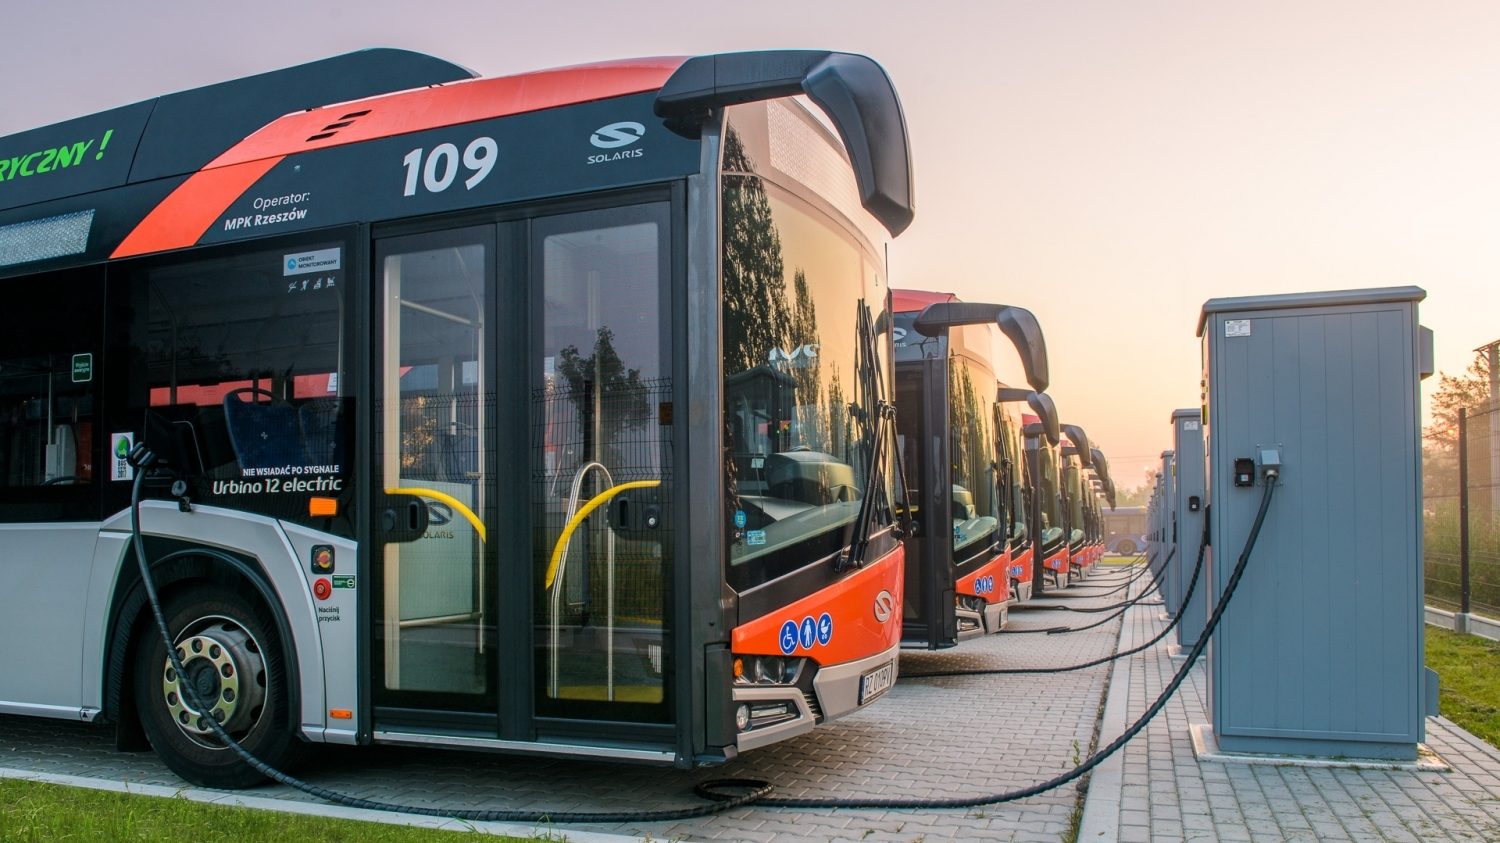 Flotila elektrobusů v polském Rzesówě u nabíjecích stojanů. Solaris dodal do města celkem 10 svých elektrobusů. (Solaris Bus & Coach)